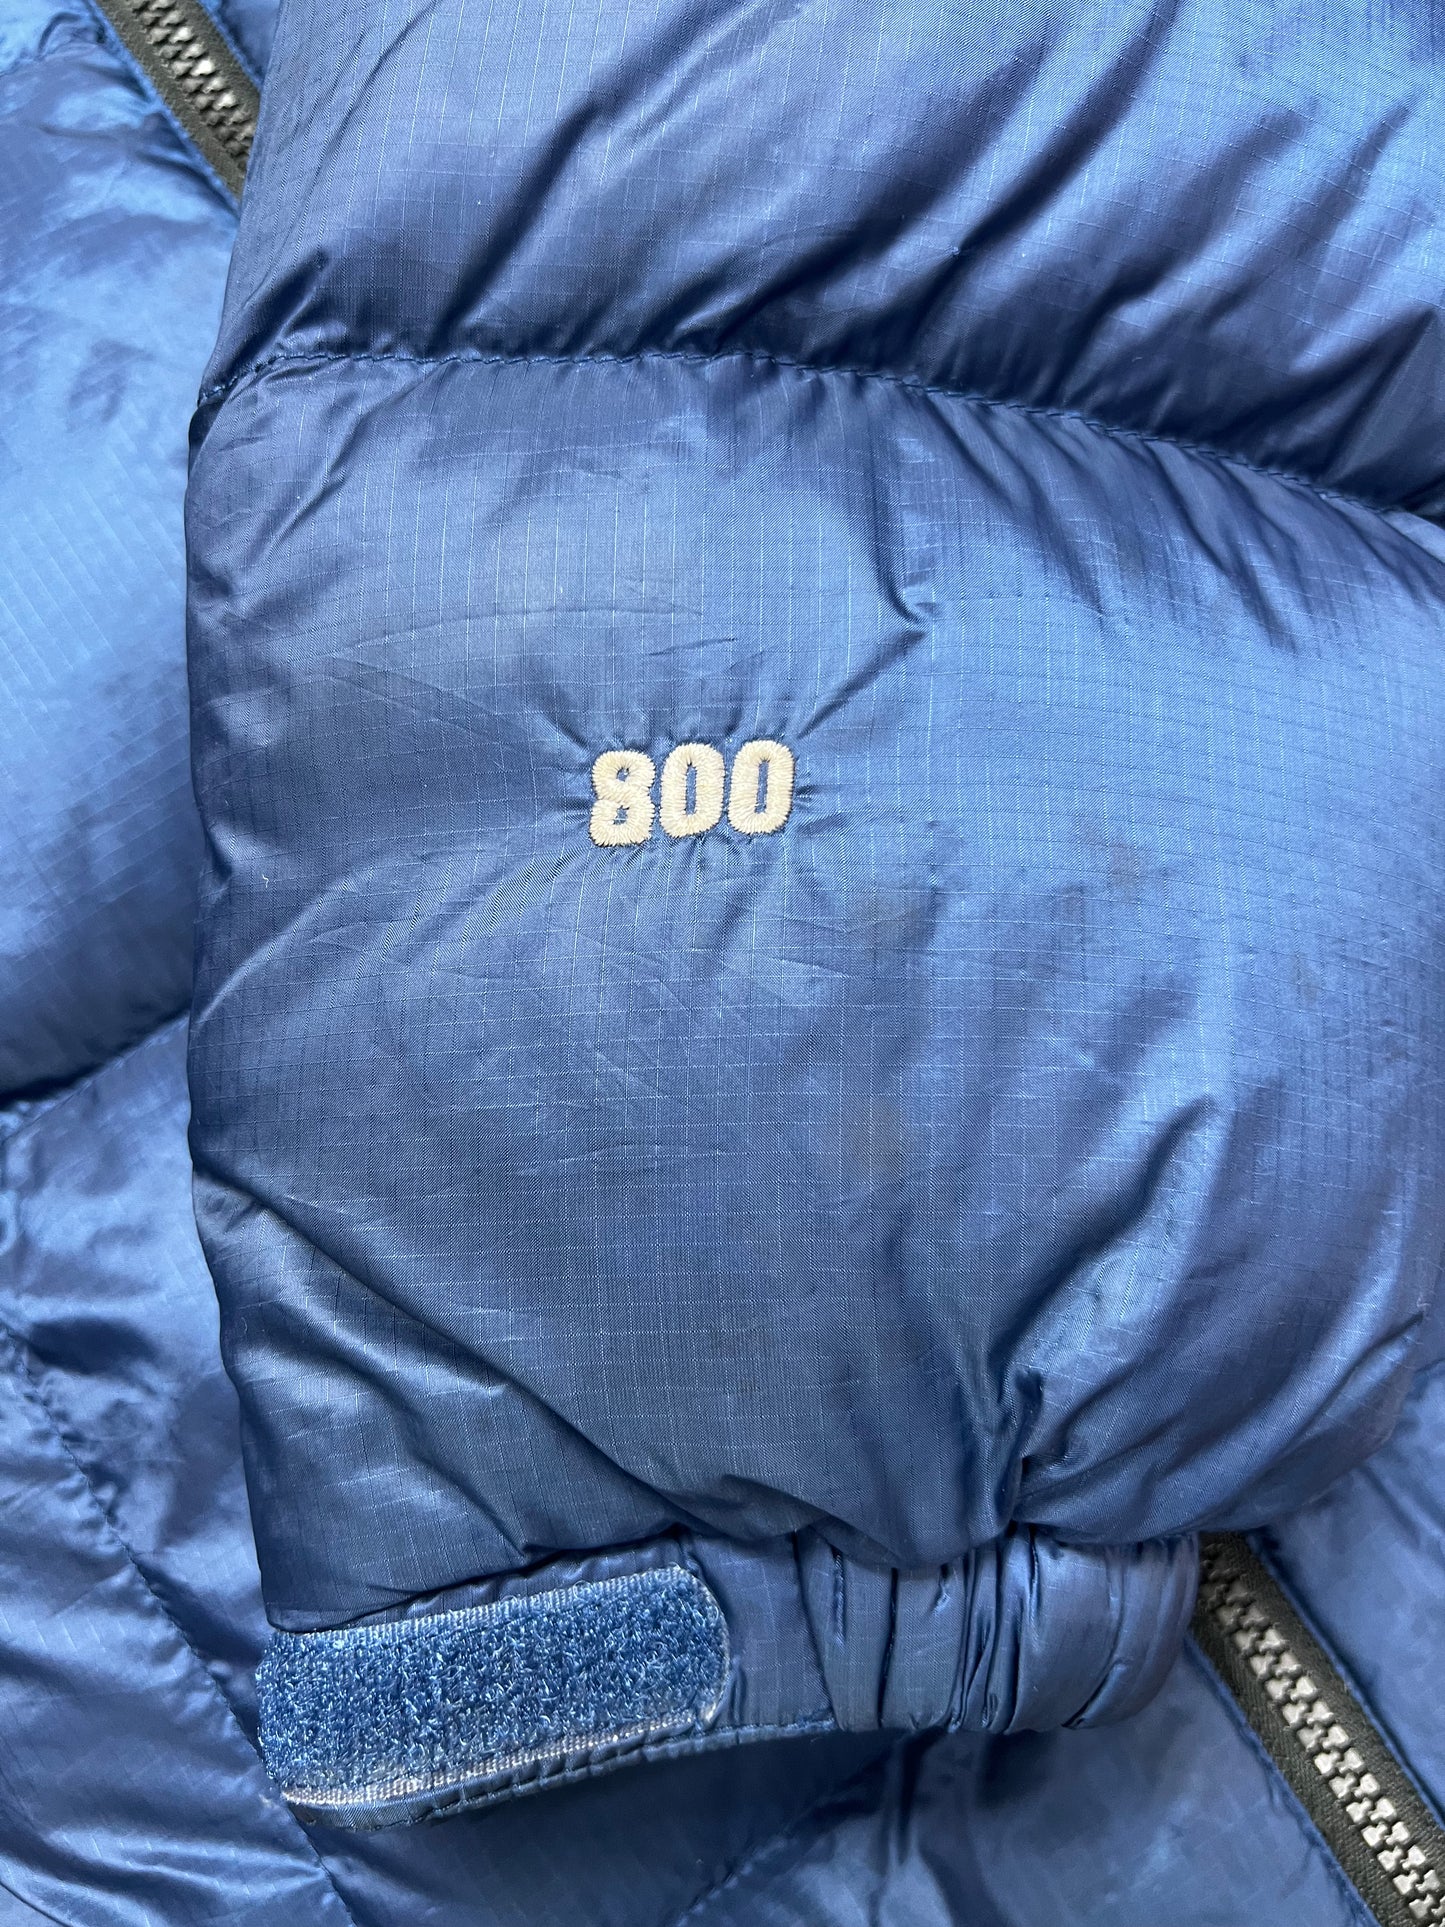 10043【THE NORTH FACE】ザノースフェイス メンズ サミットシリーズ ダウンジャケット 800フィル ブルー 95